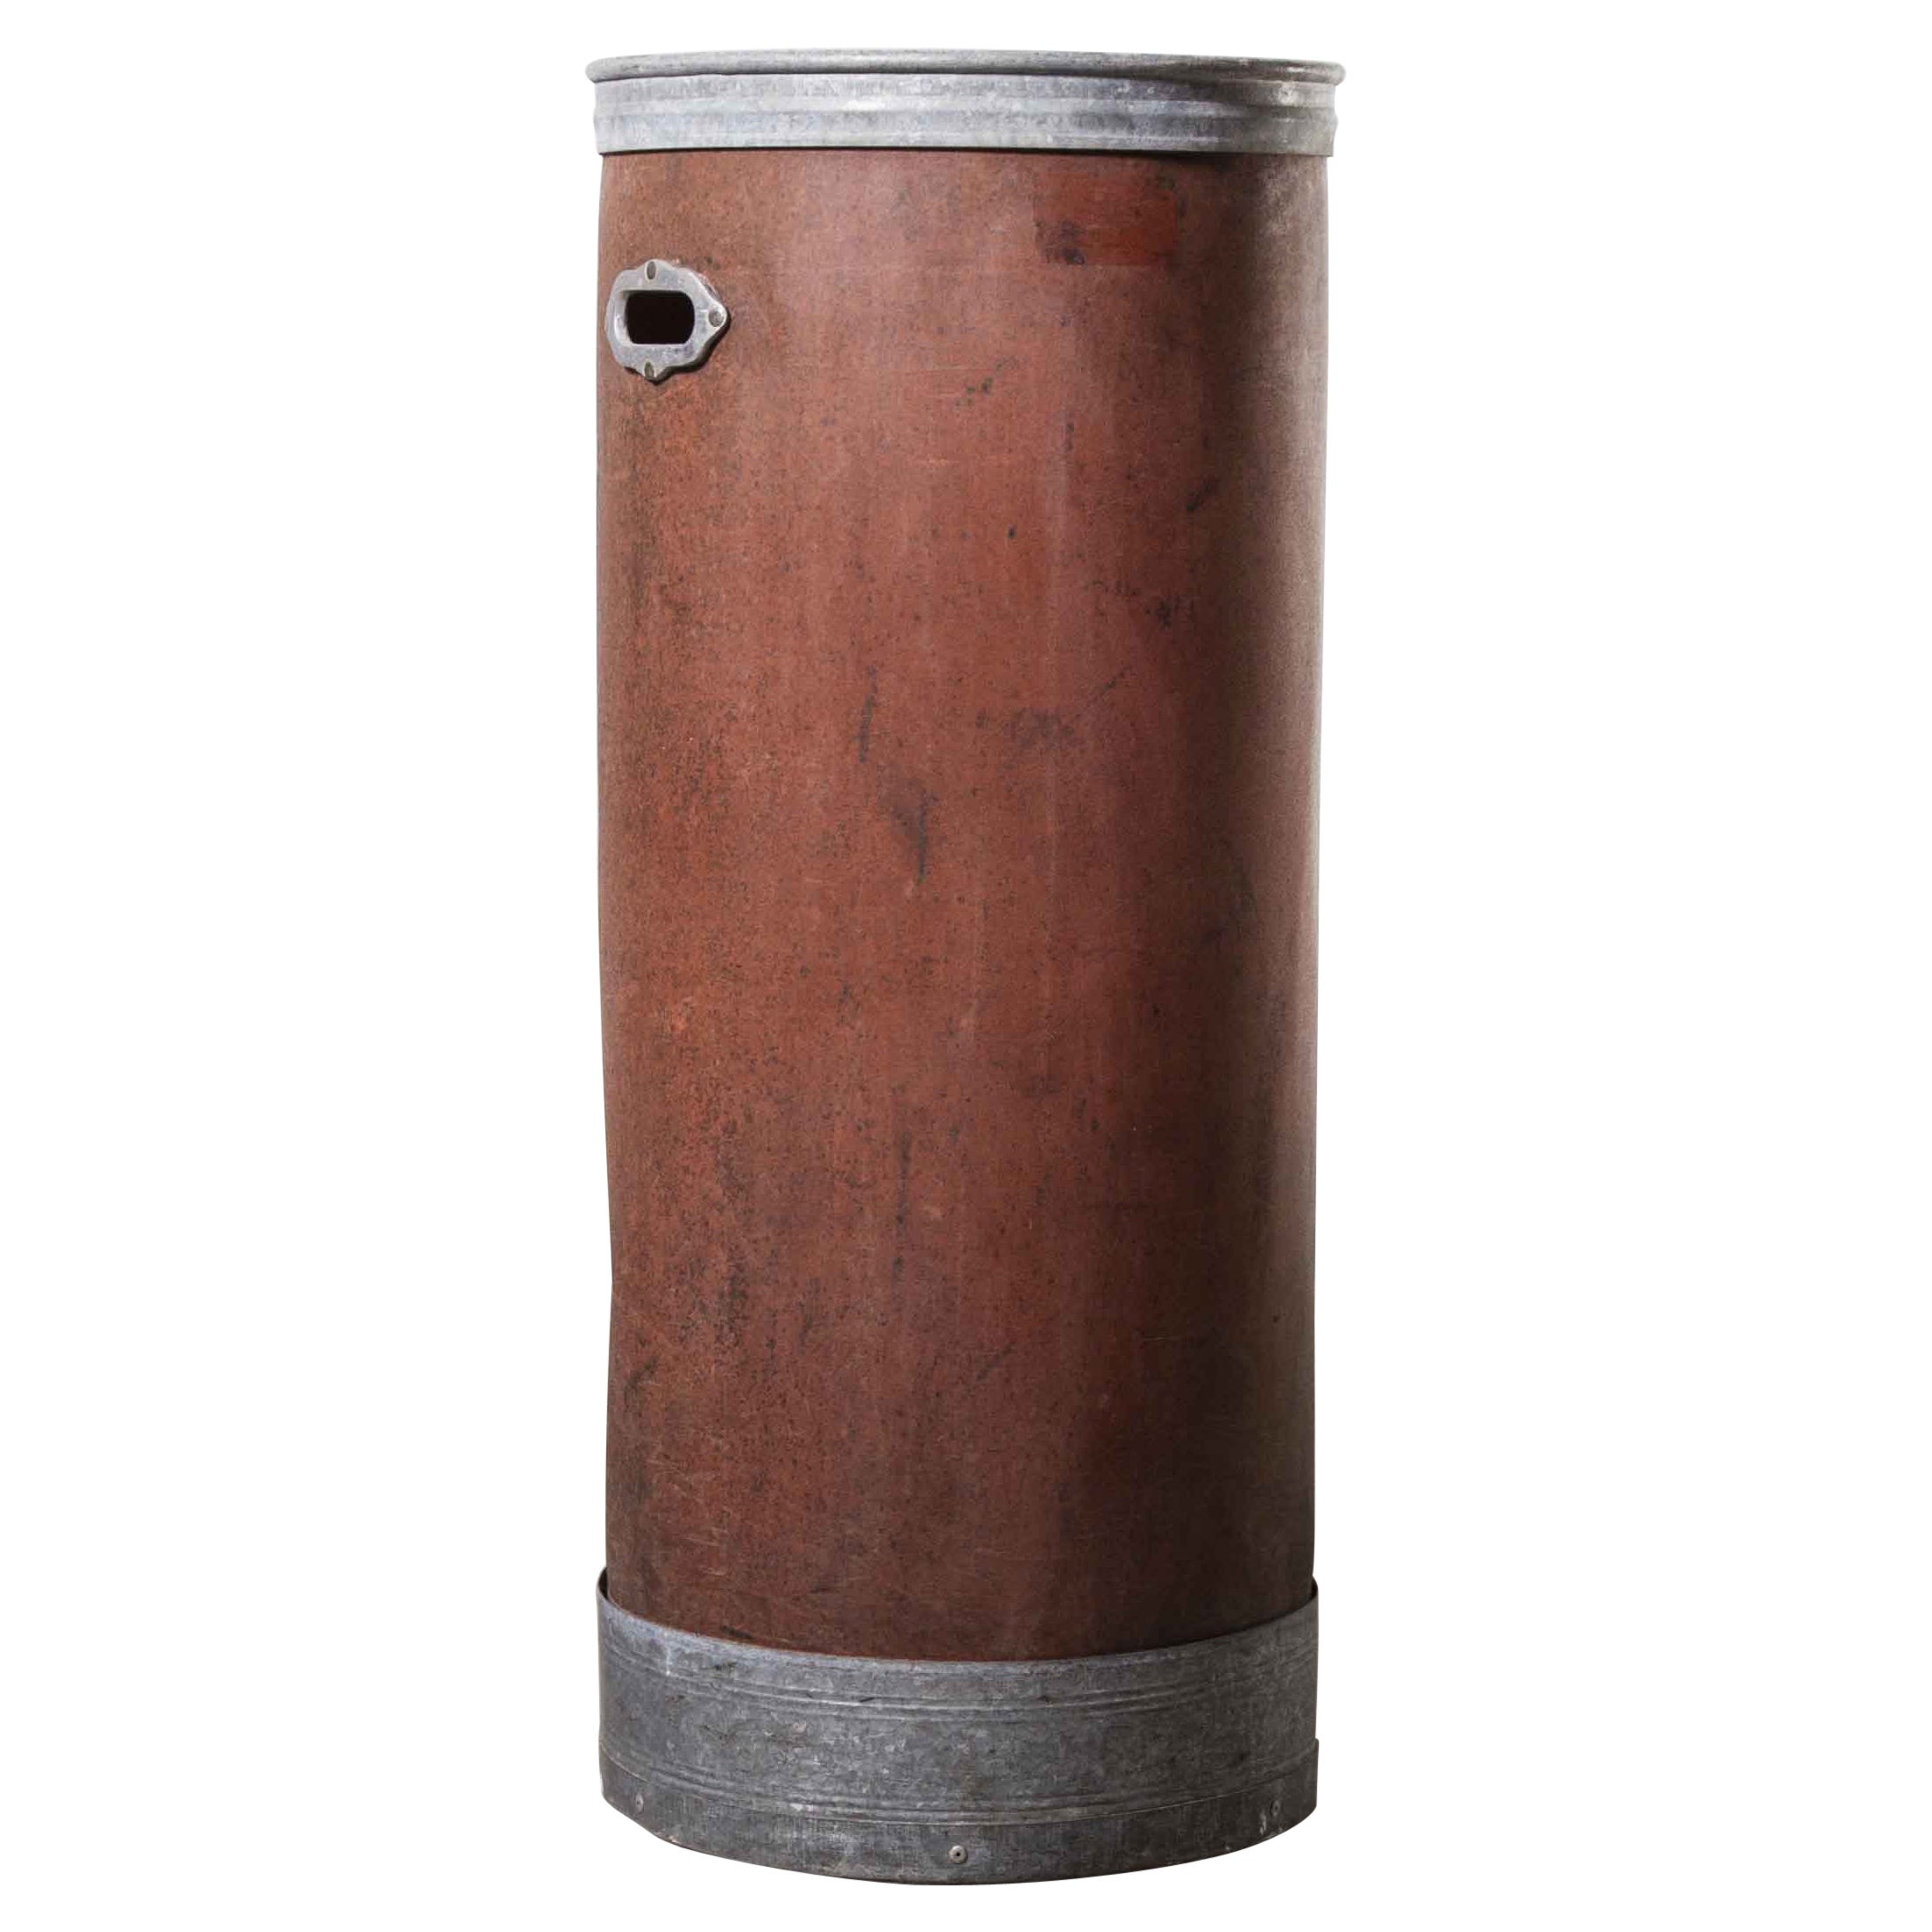 Grand cylindre de rangement industriel original Suroy des années 1940 « Modèle 1259 »